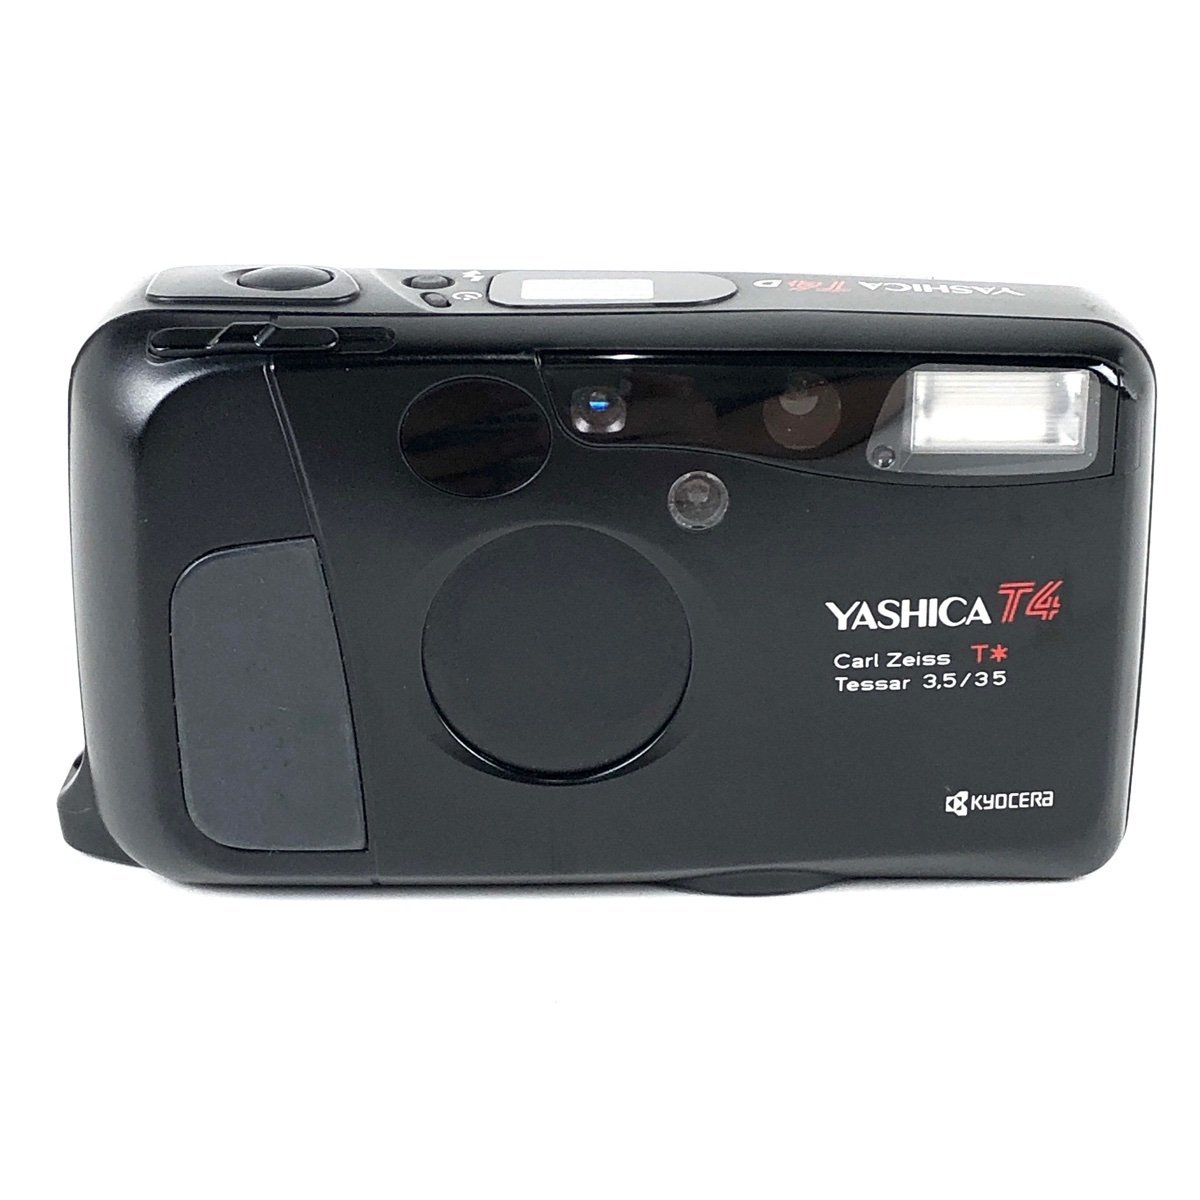 ヤフオク! -「yashica t4」(カメラ、光学機器) の落札相場・落札価格